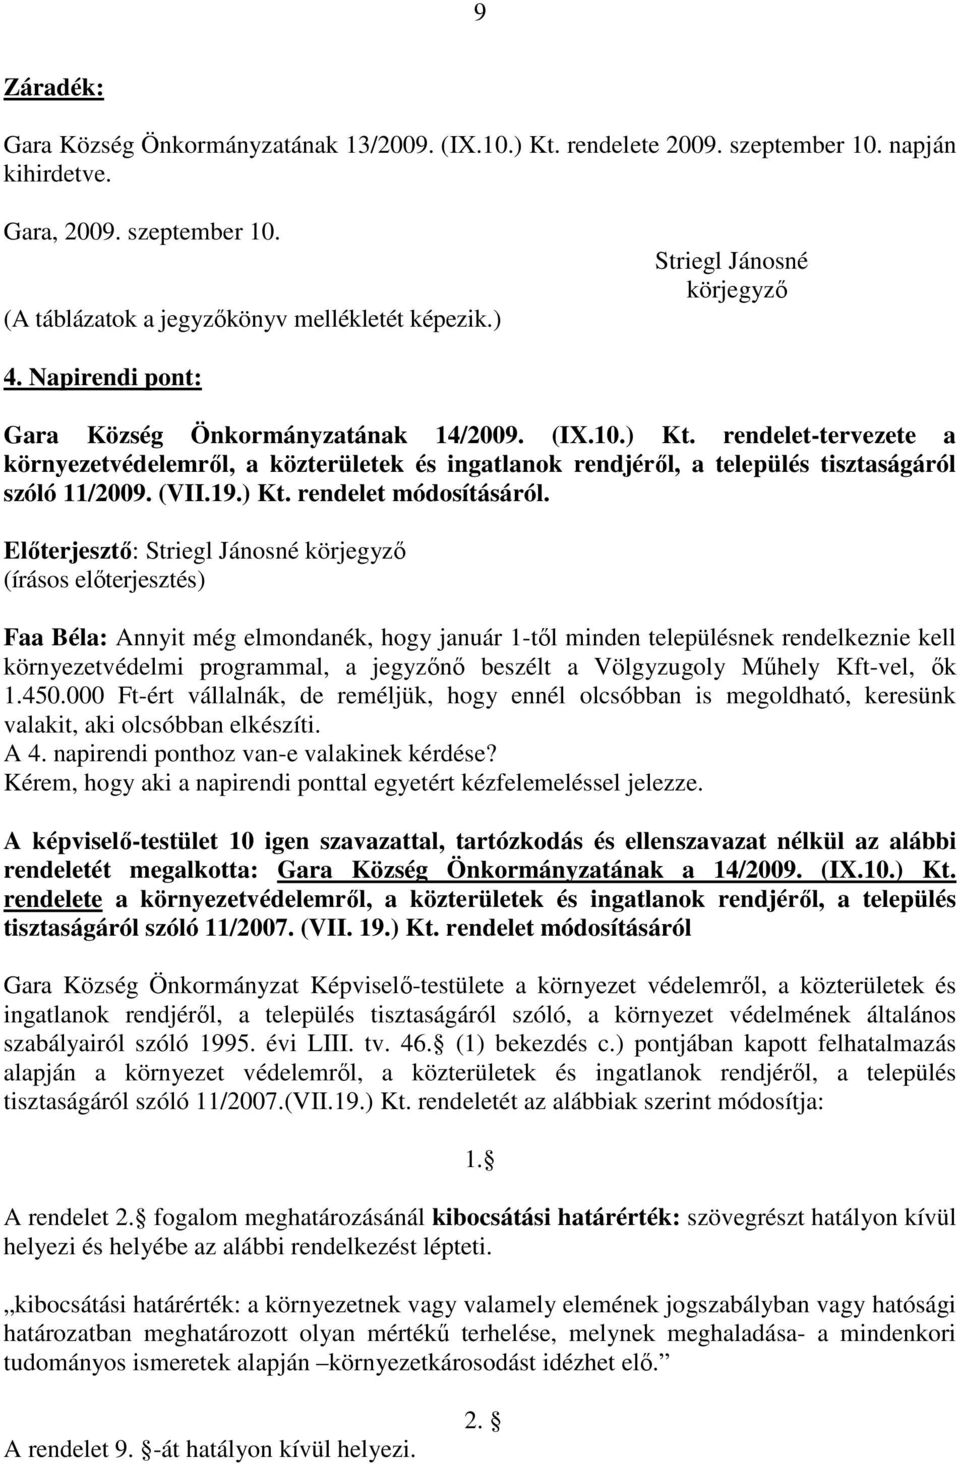 rendelet-tervezete a környezetvédelemrıl, a közterületek és ingatlanok rendjérıl, a település tisztaságáról szóló 11/2009. (VII.19.) Kt. rendelet módosításáról.